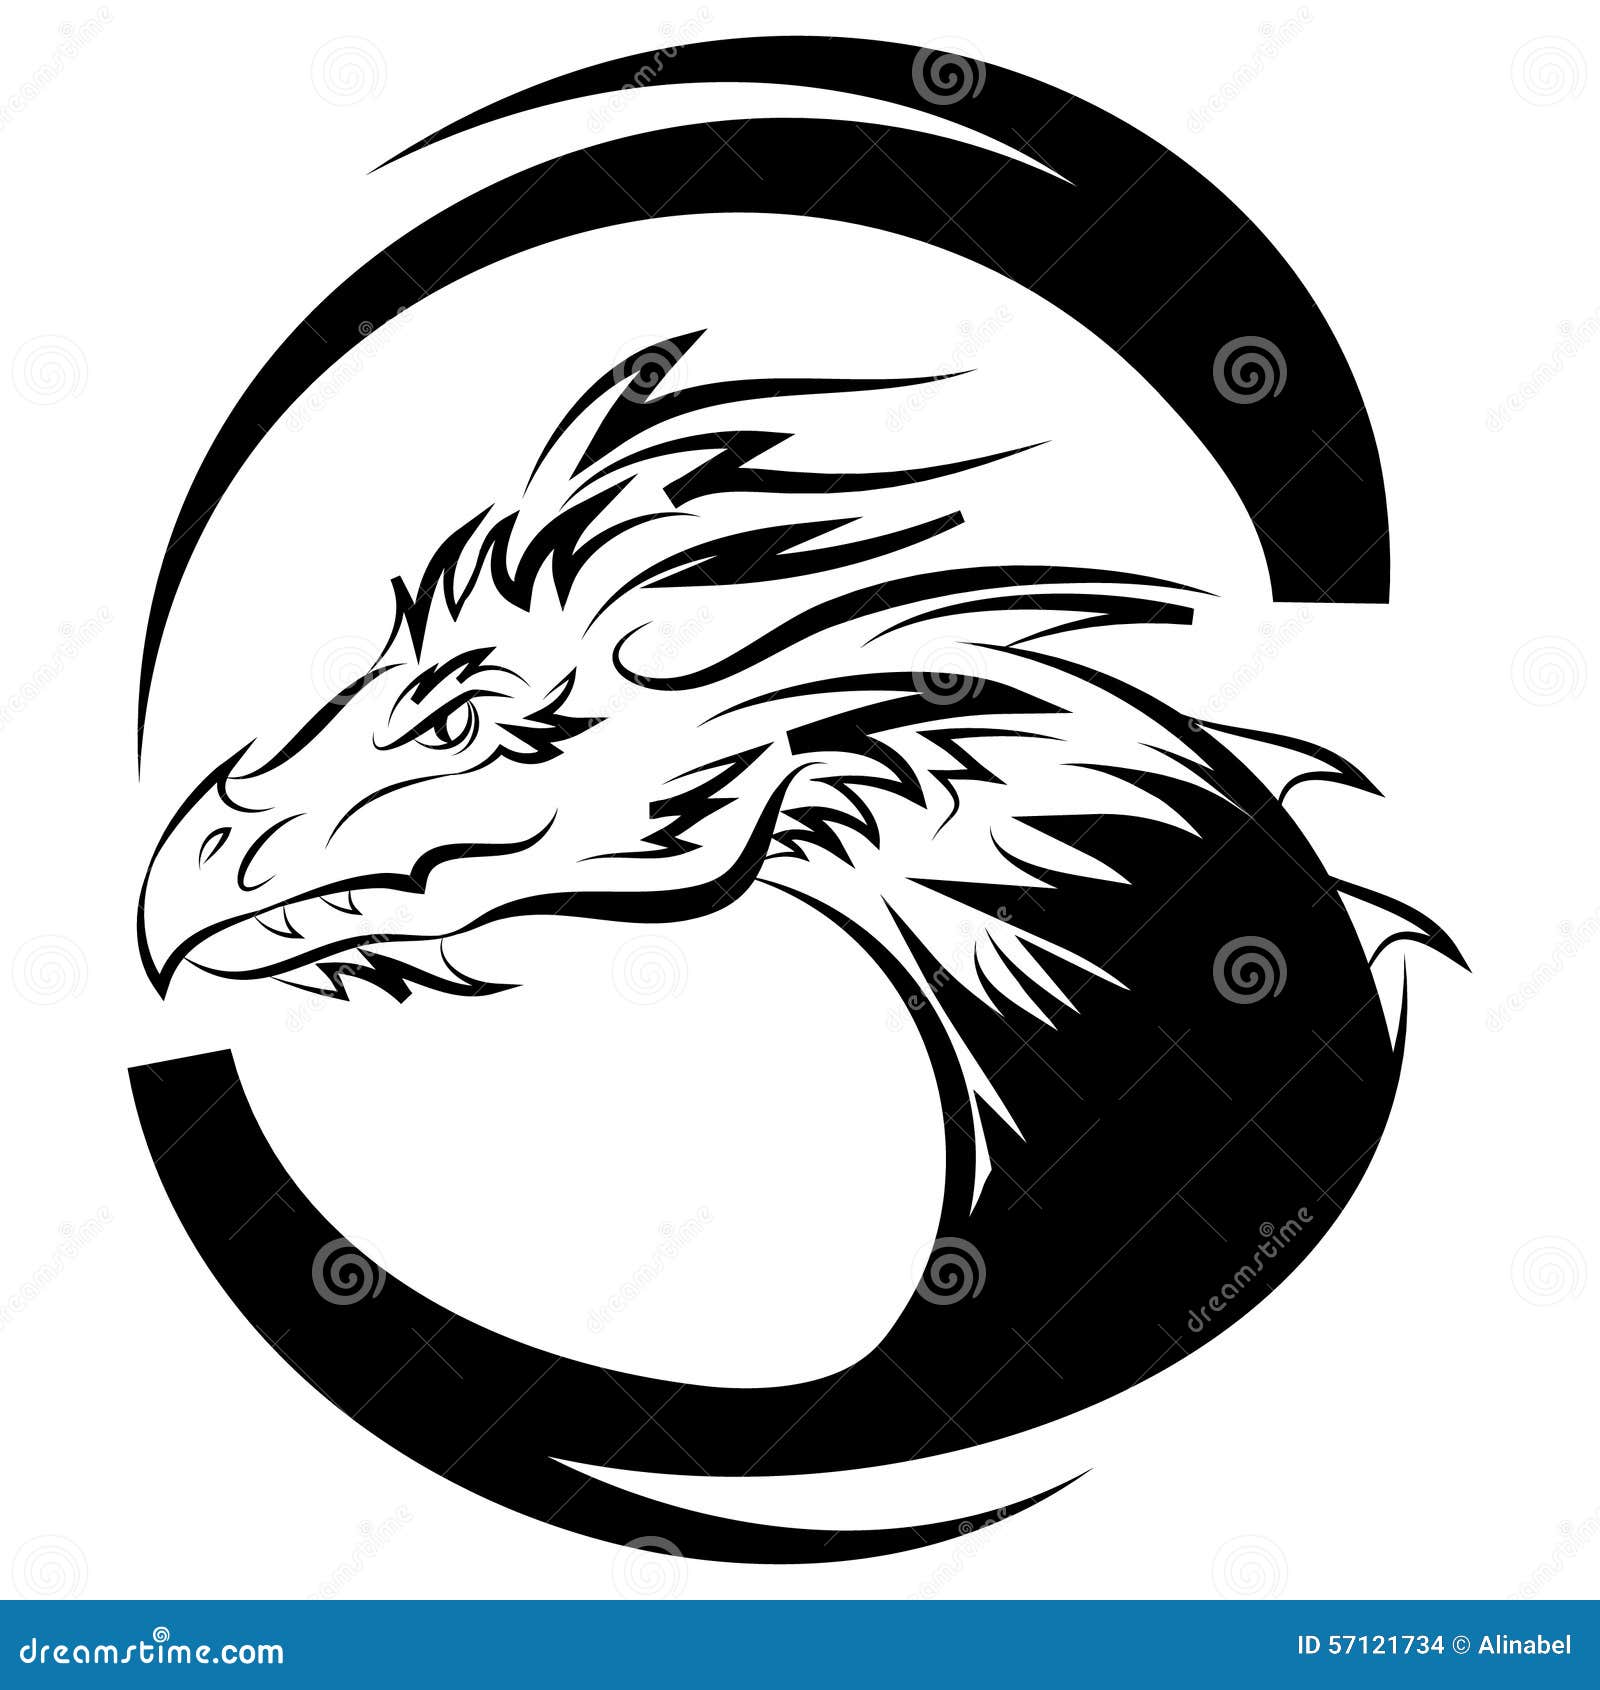 Dragon Logo Vector Design Template, Dragon Icon. Stock ...